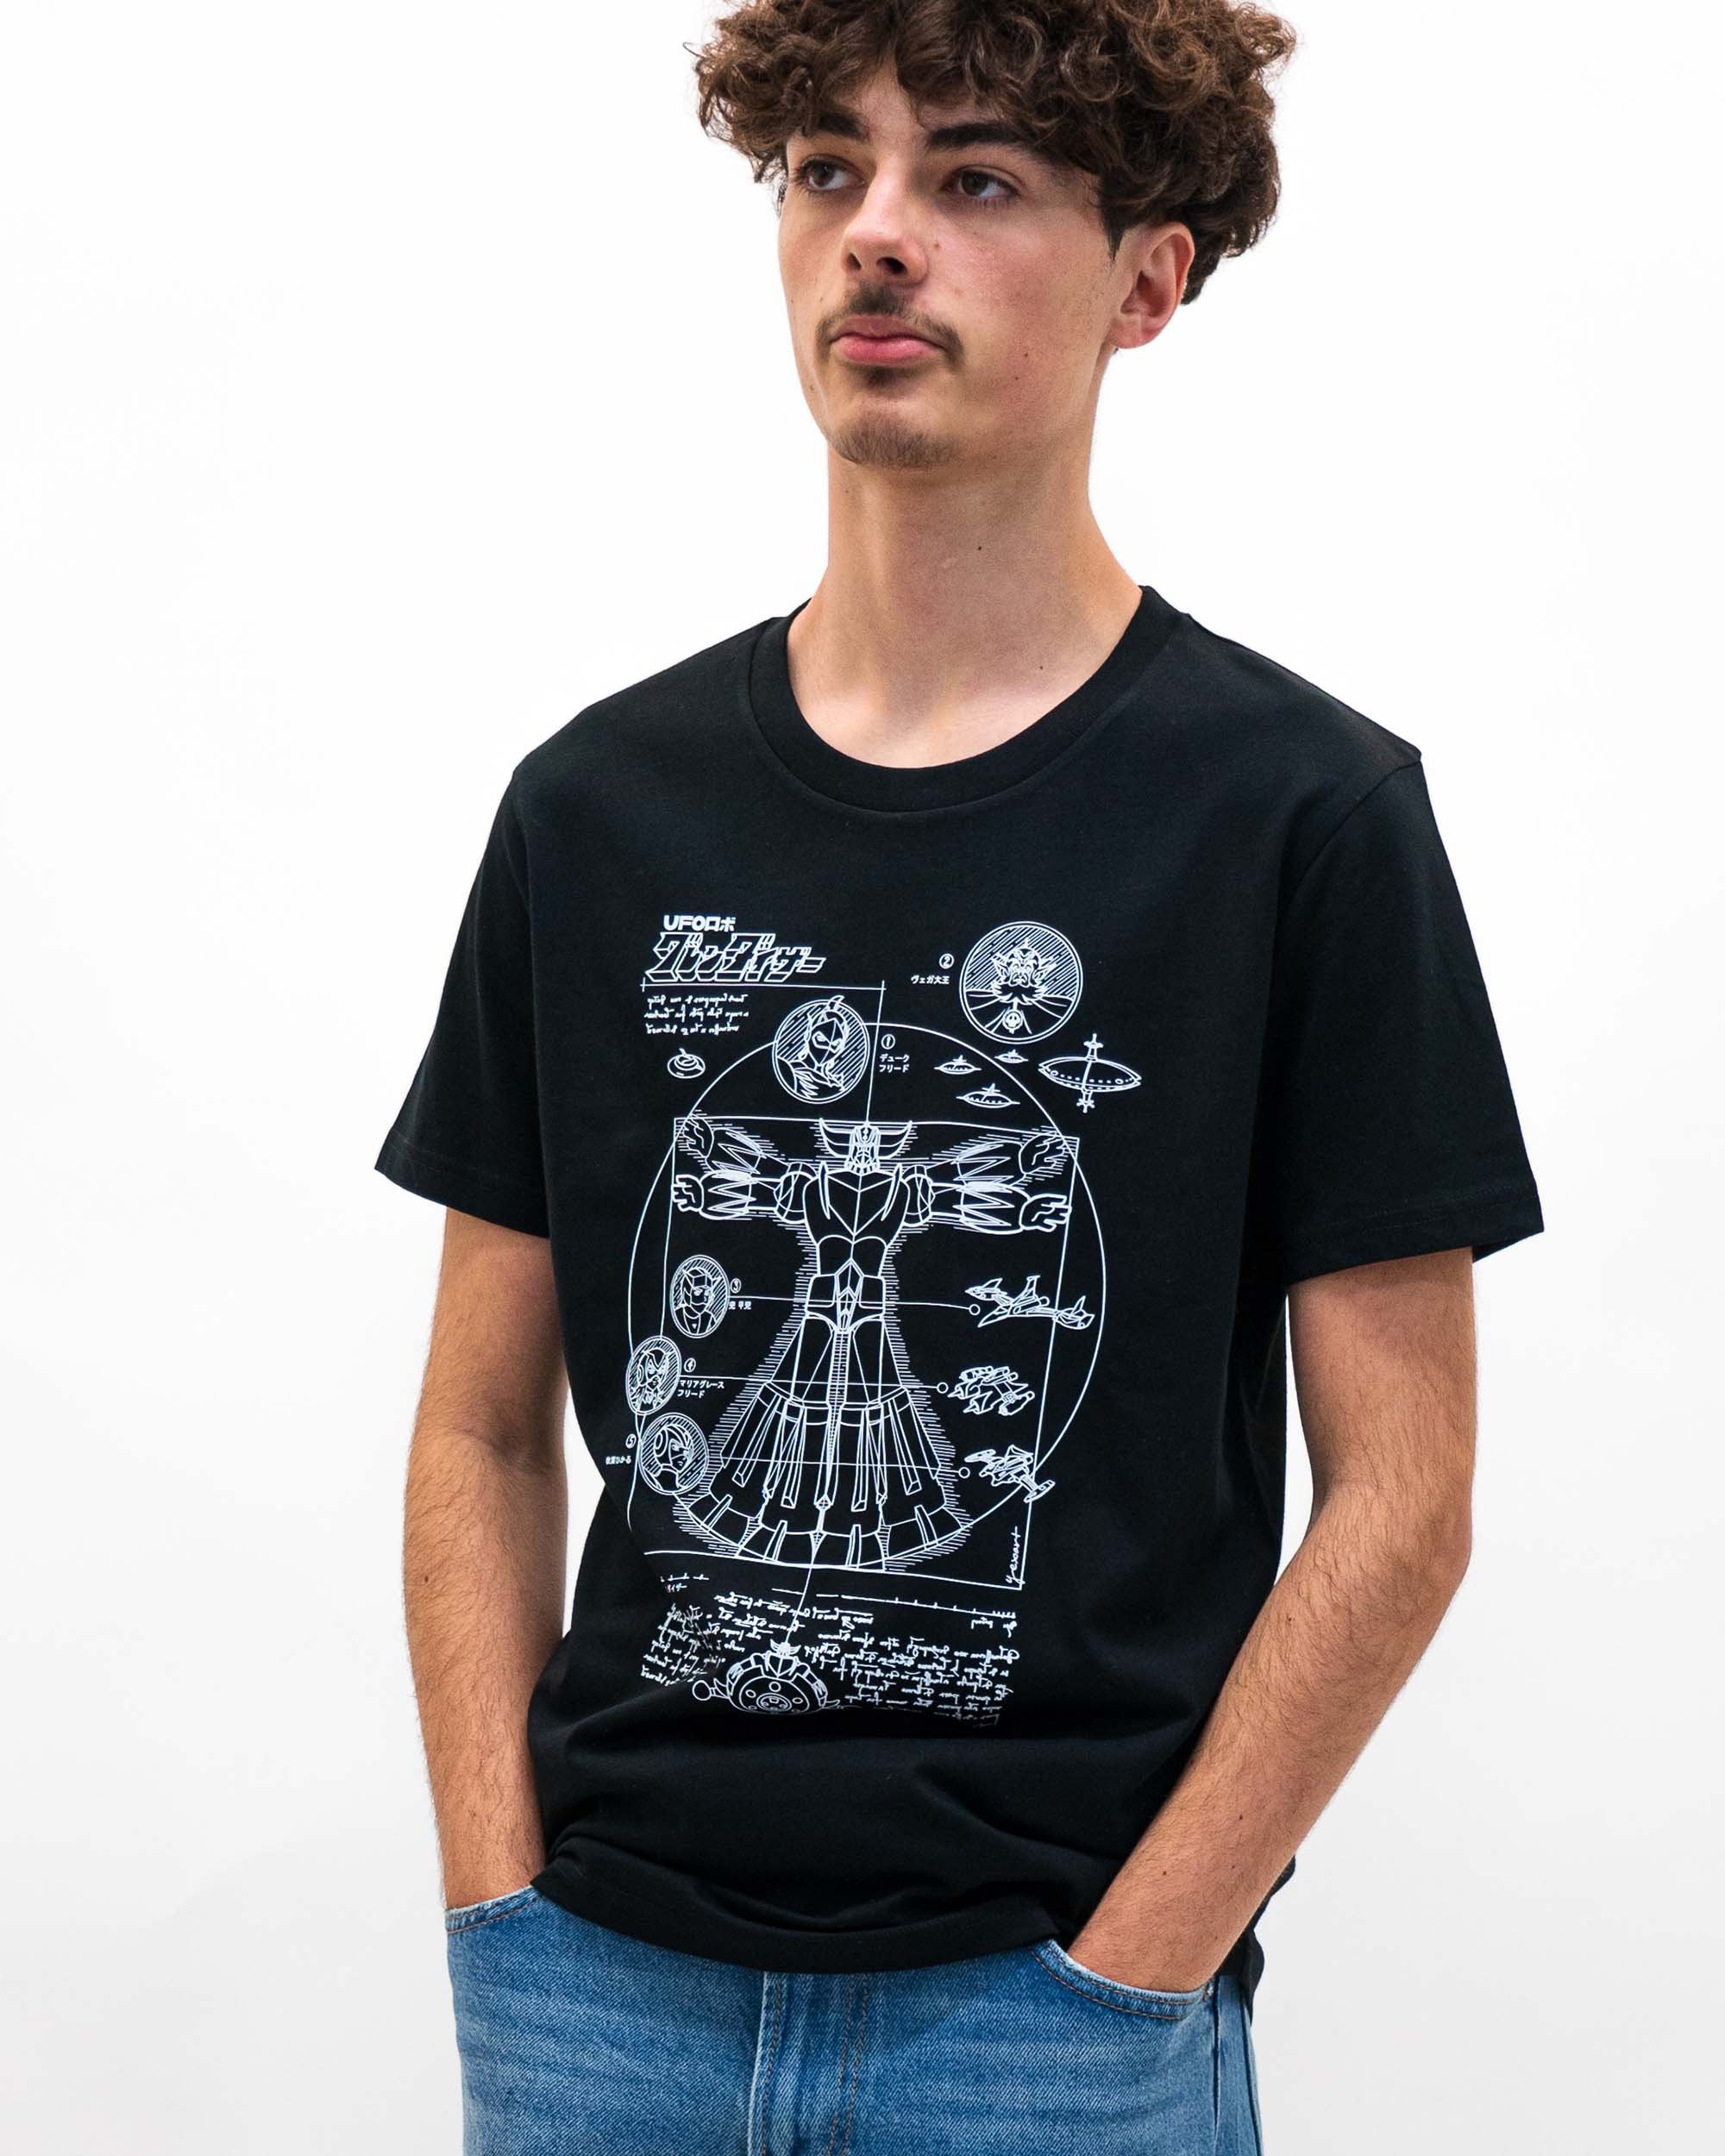 T-shirt Grendizer Blueprint de couleur Noir par yexart